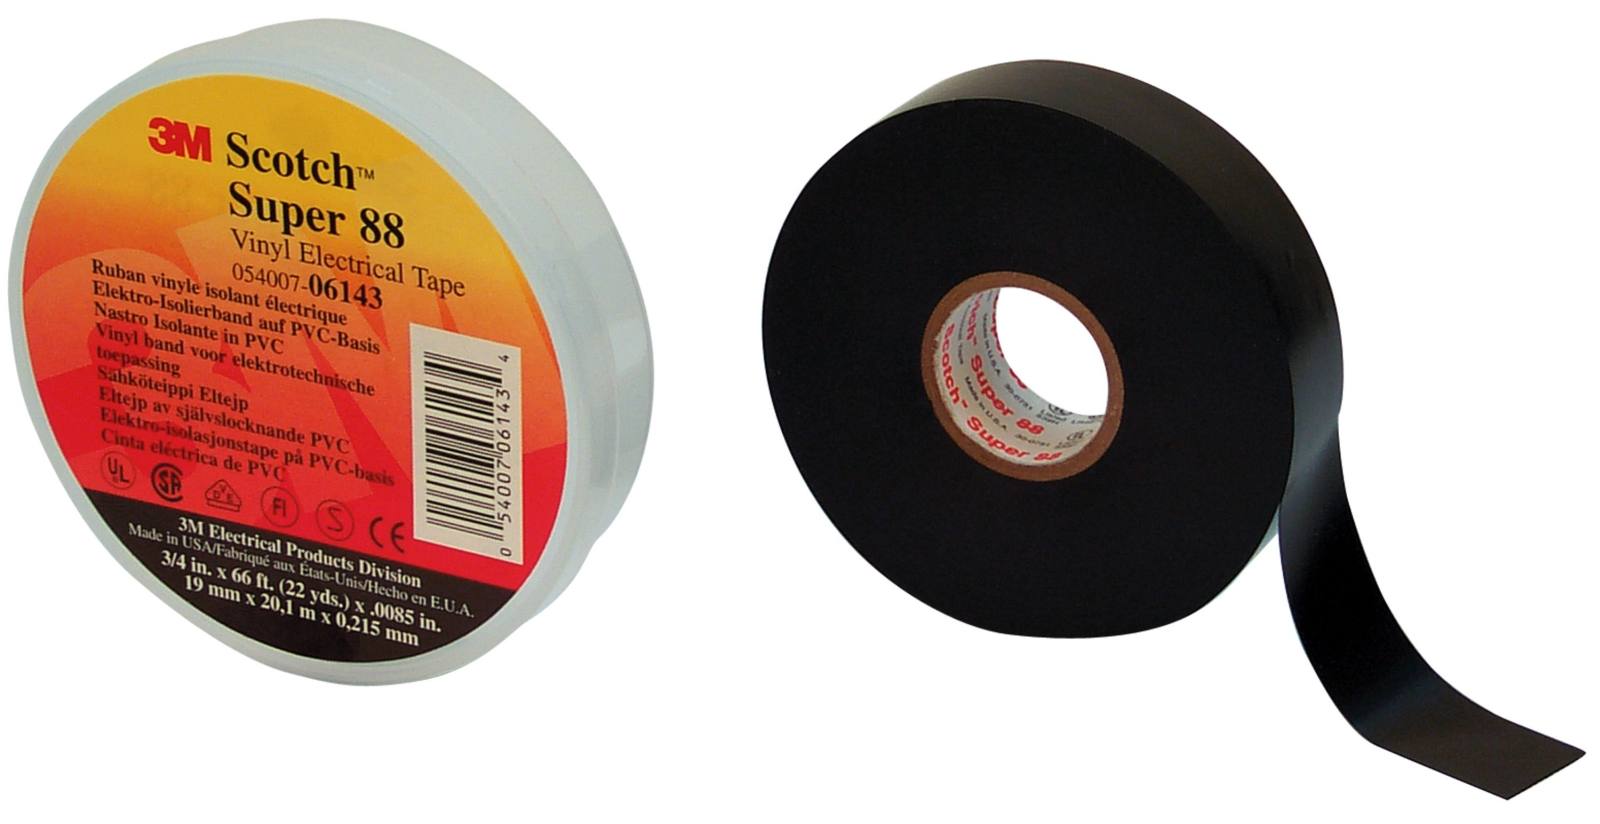 3M Scotch Super 88 Vinyl Electrical Insulating Tape, Black 19 mm x 20 m, 0.22 mm, in a box